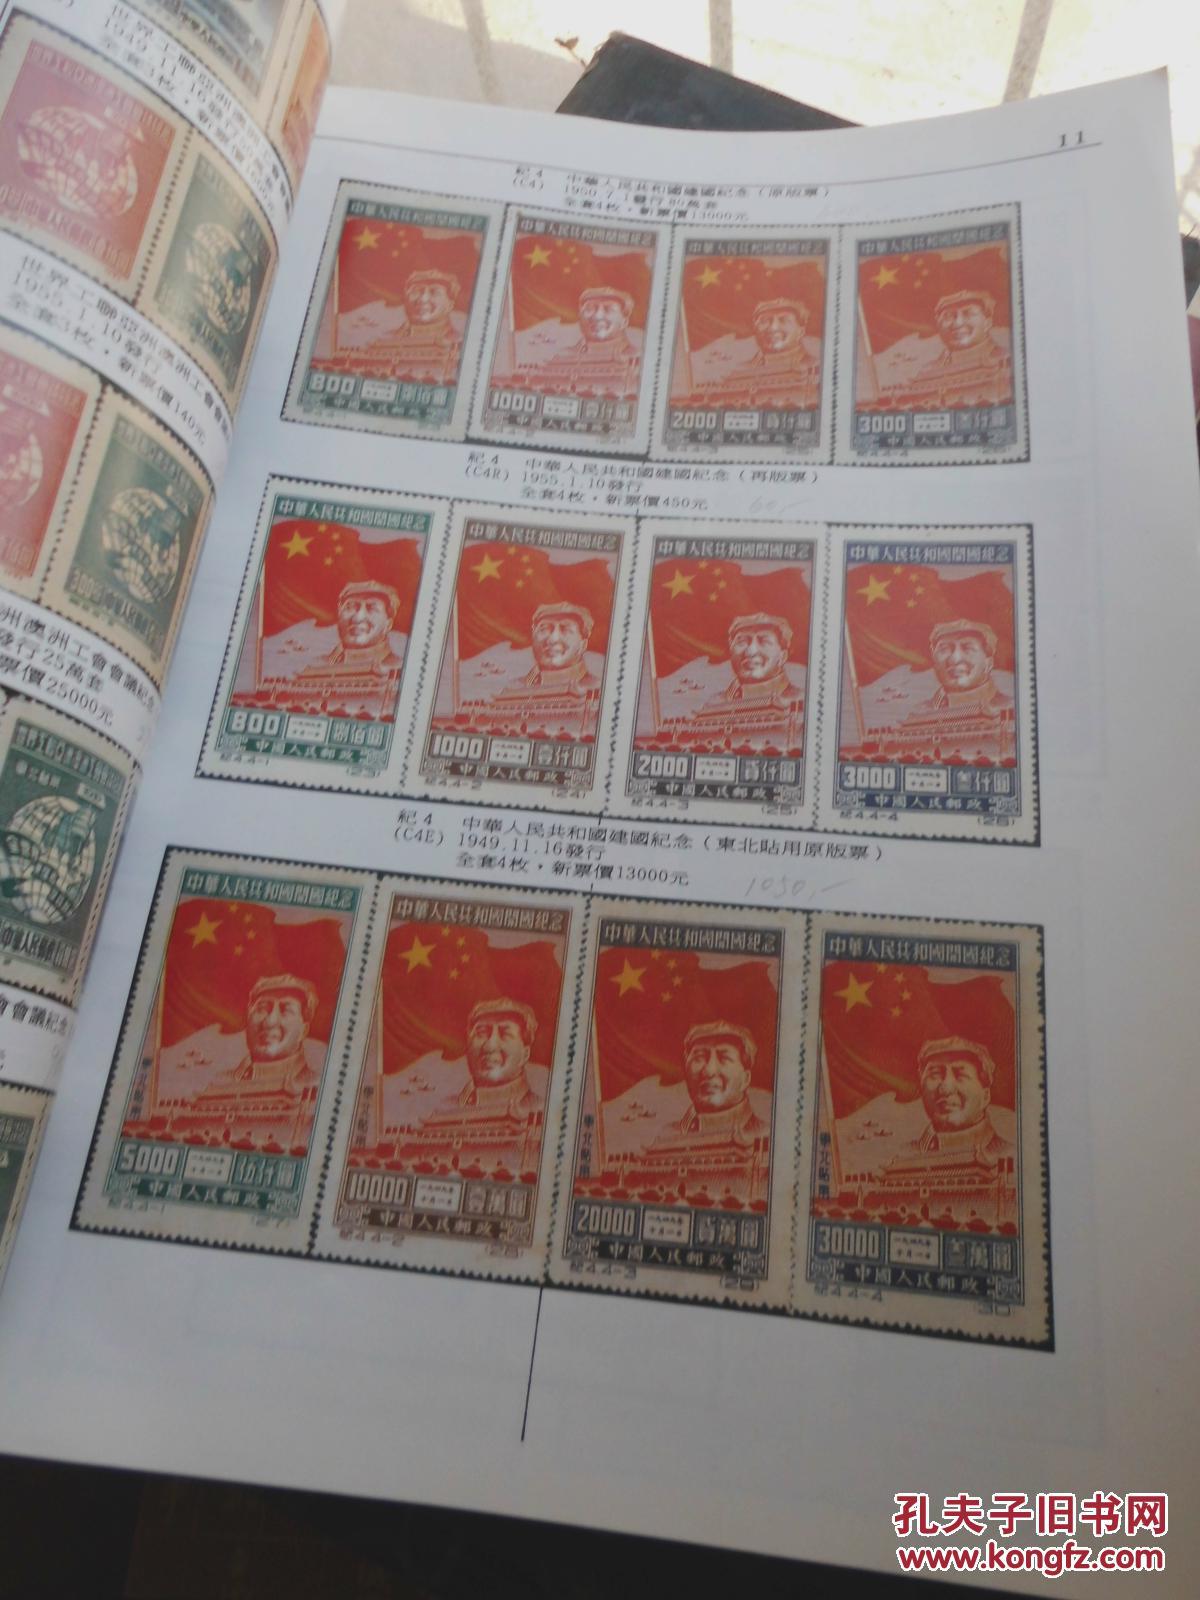 中国的邮票(中国的邮票英文)